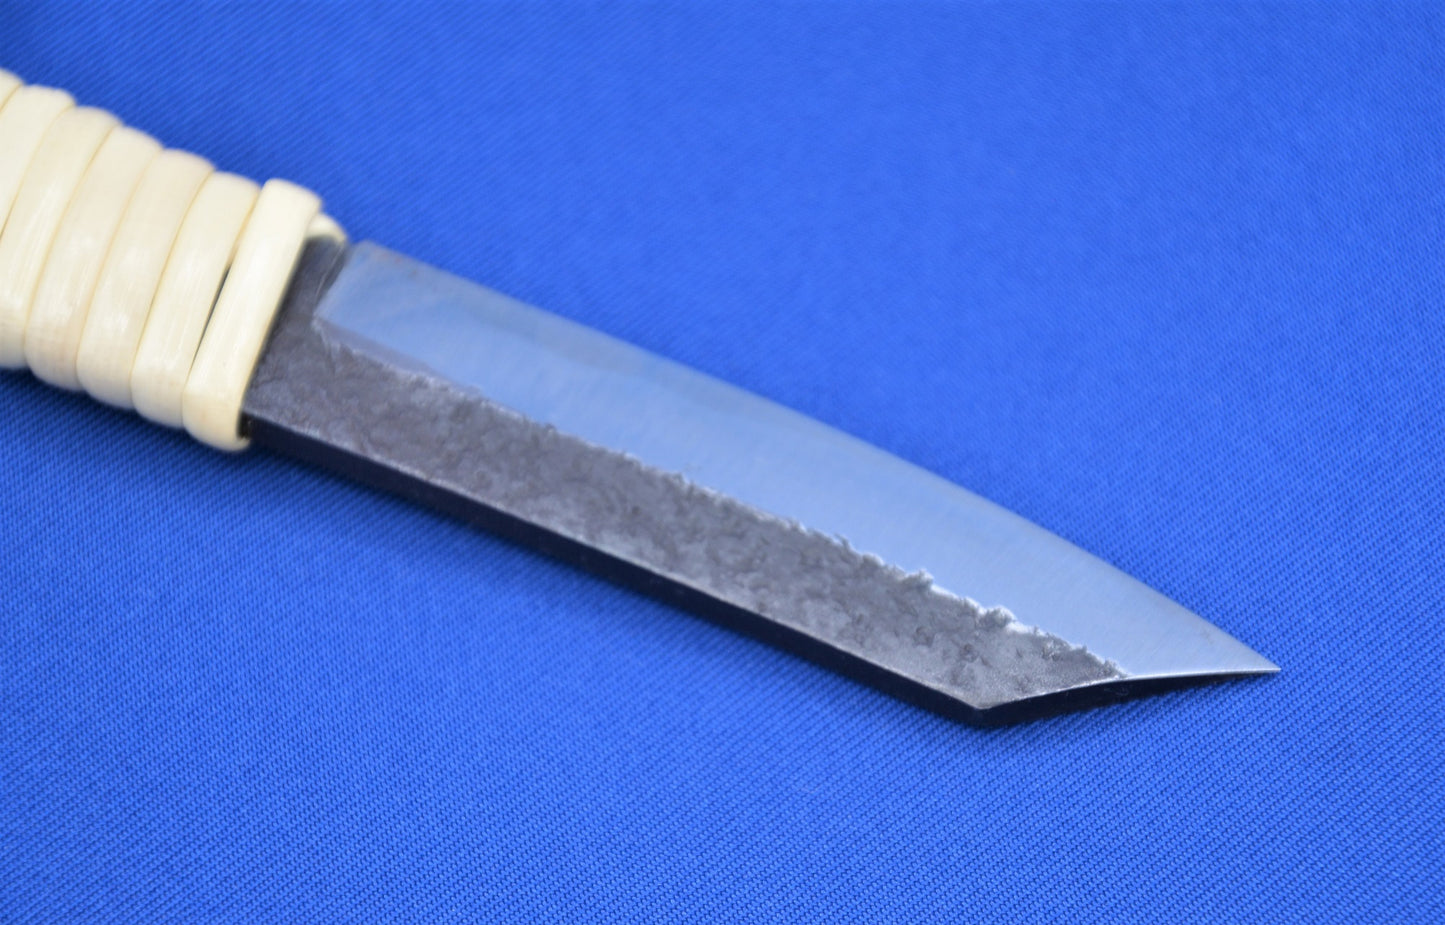 Higonokami Double Bevel Knife With Rattan Handle